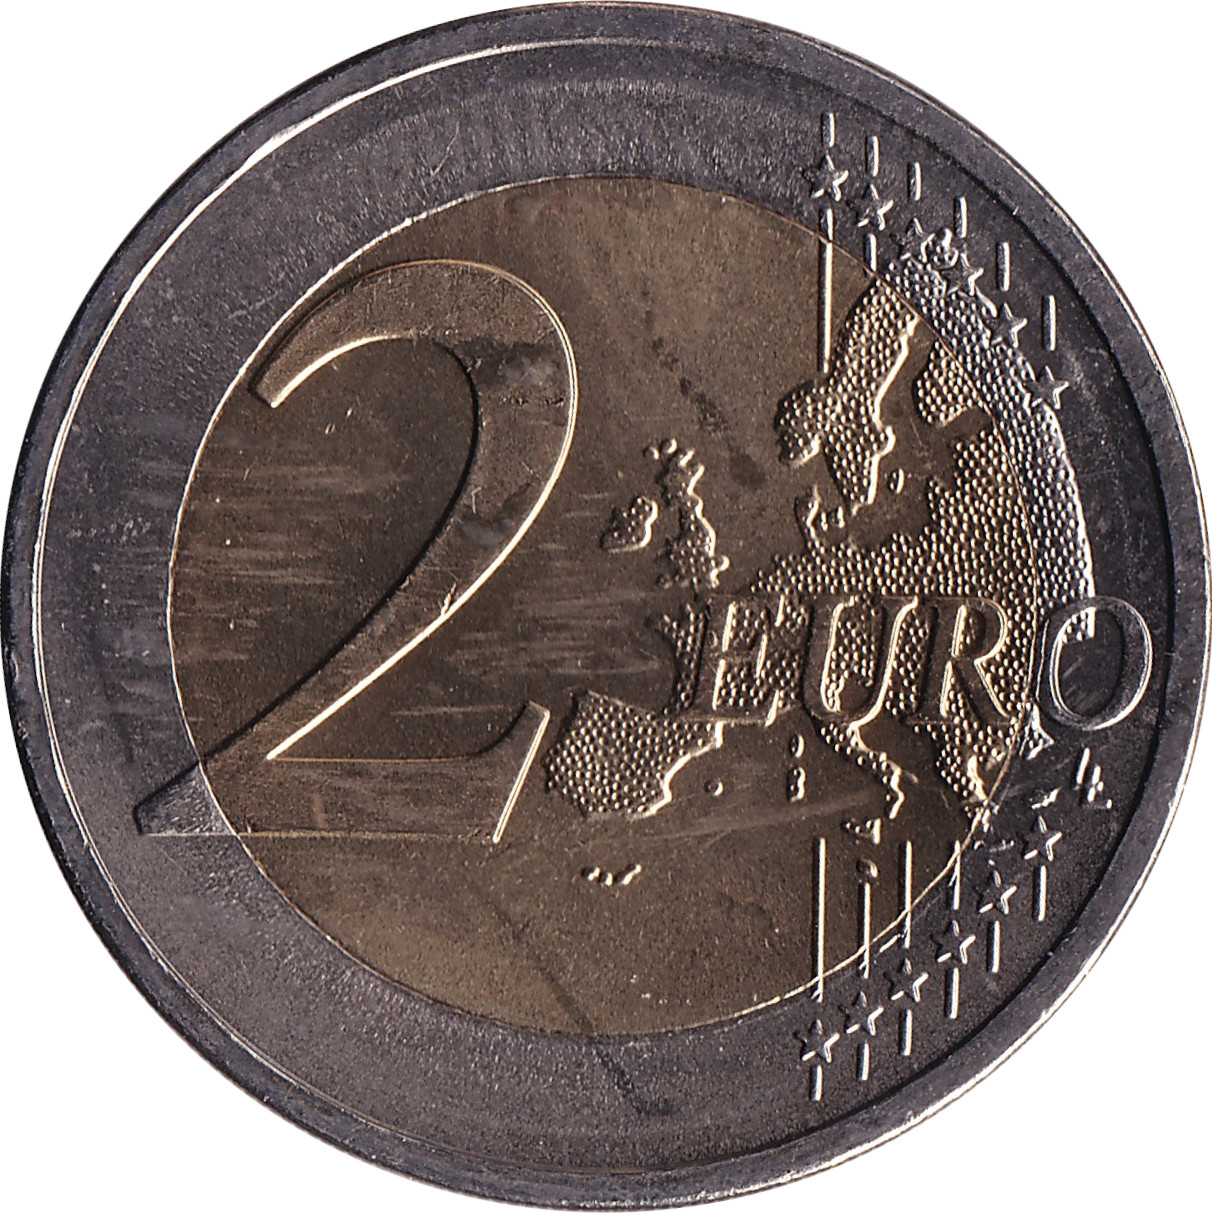 2 euro - Níkos Kazantzákis